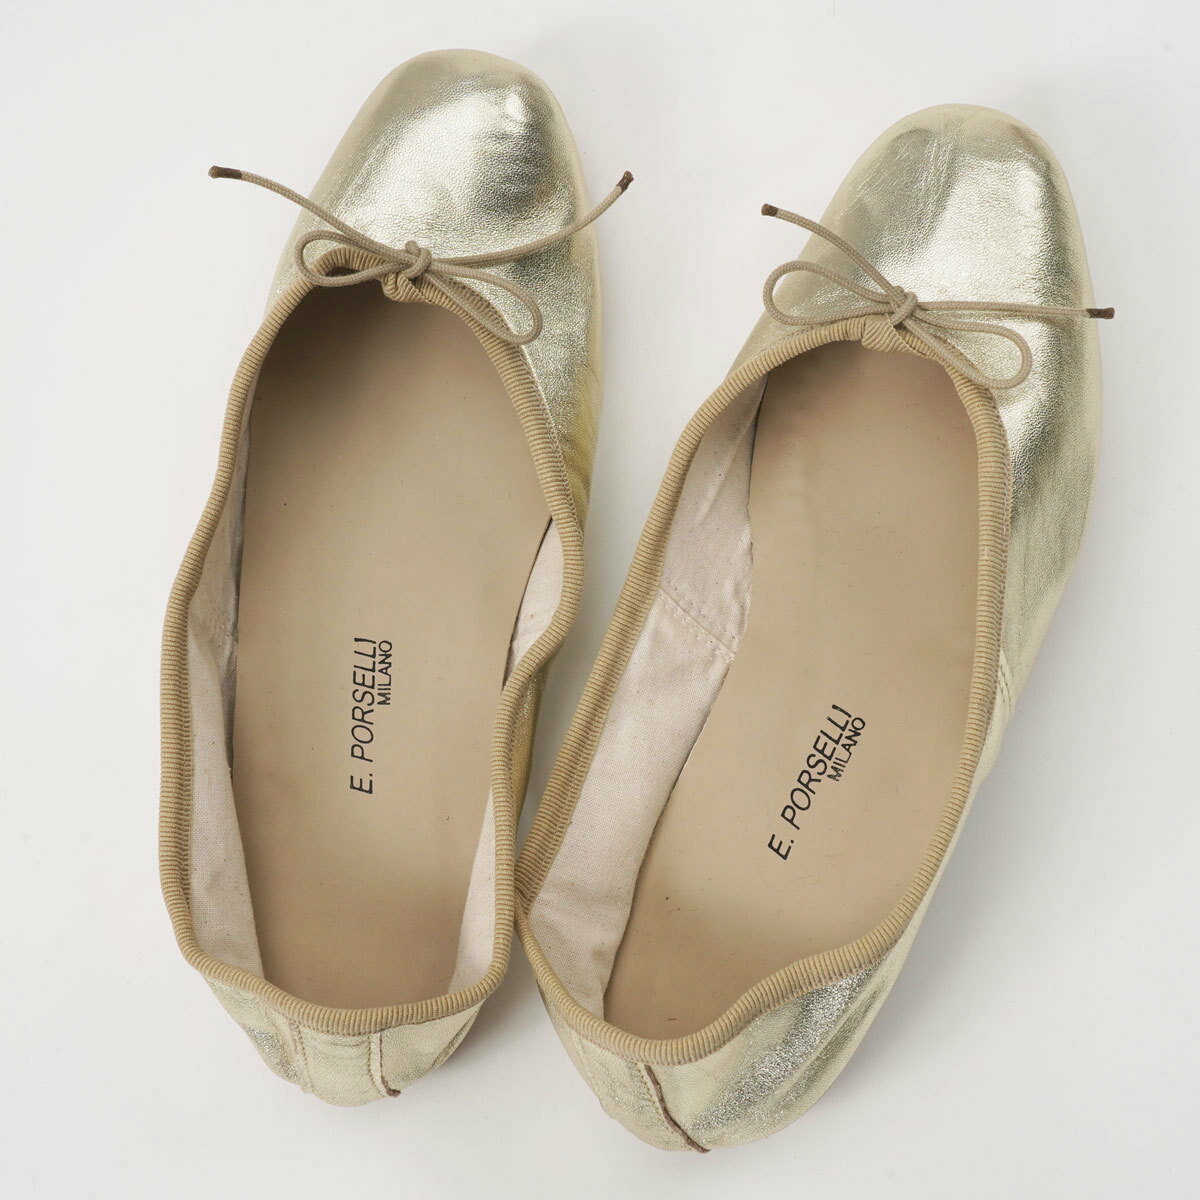 [訳あり特価 38サイズ]PORSELLI ポルセリ バレエシューズ BALLERINE LAMINATA gold レディース パンプス 靴